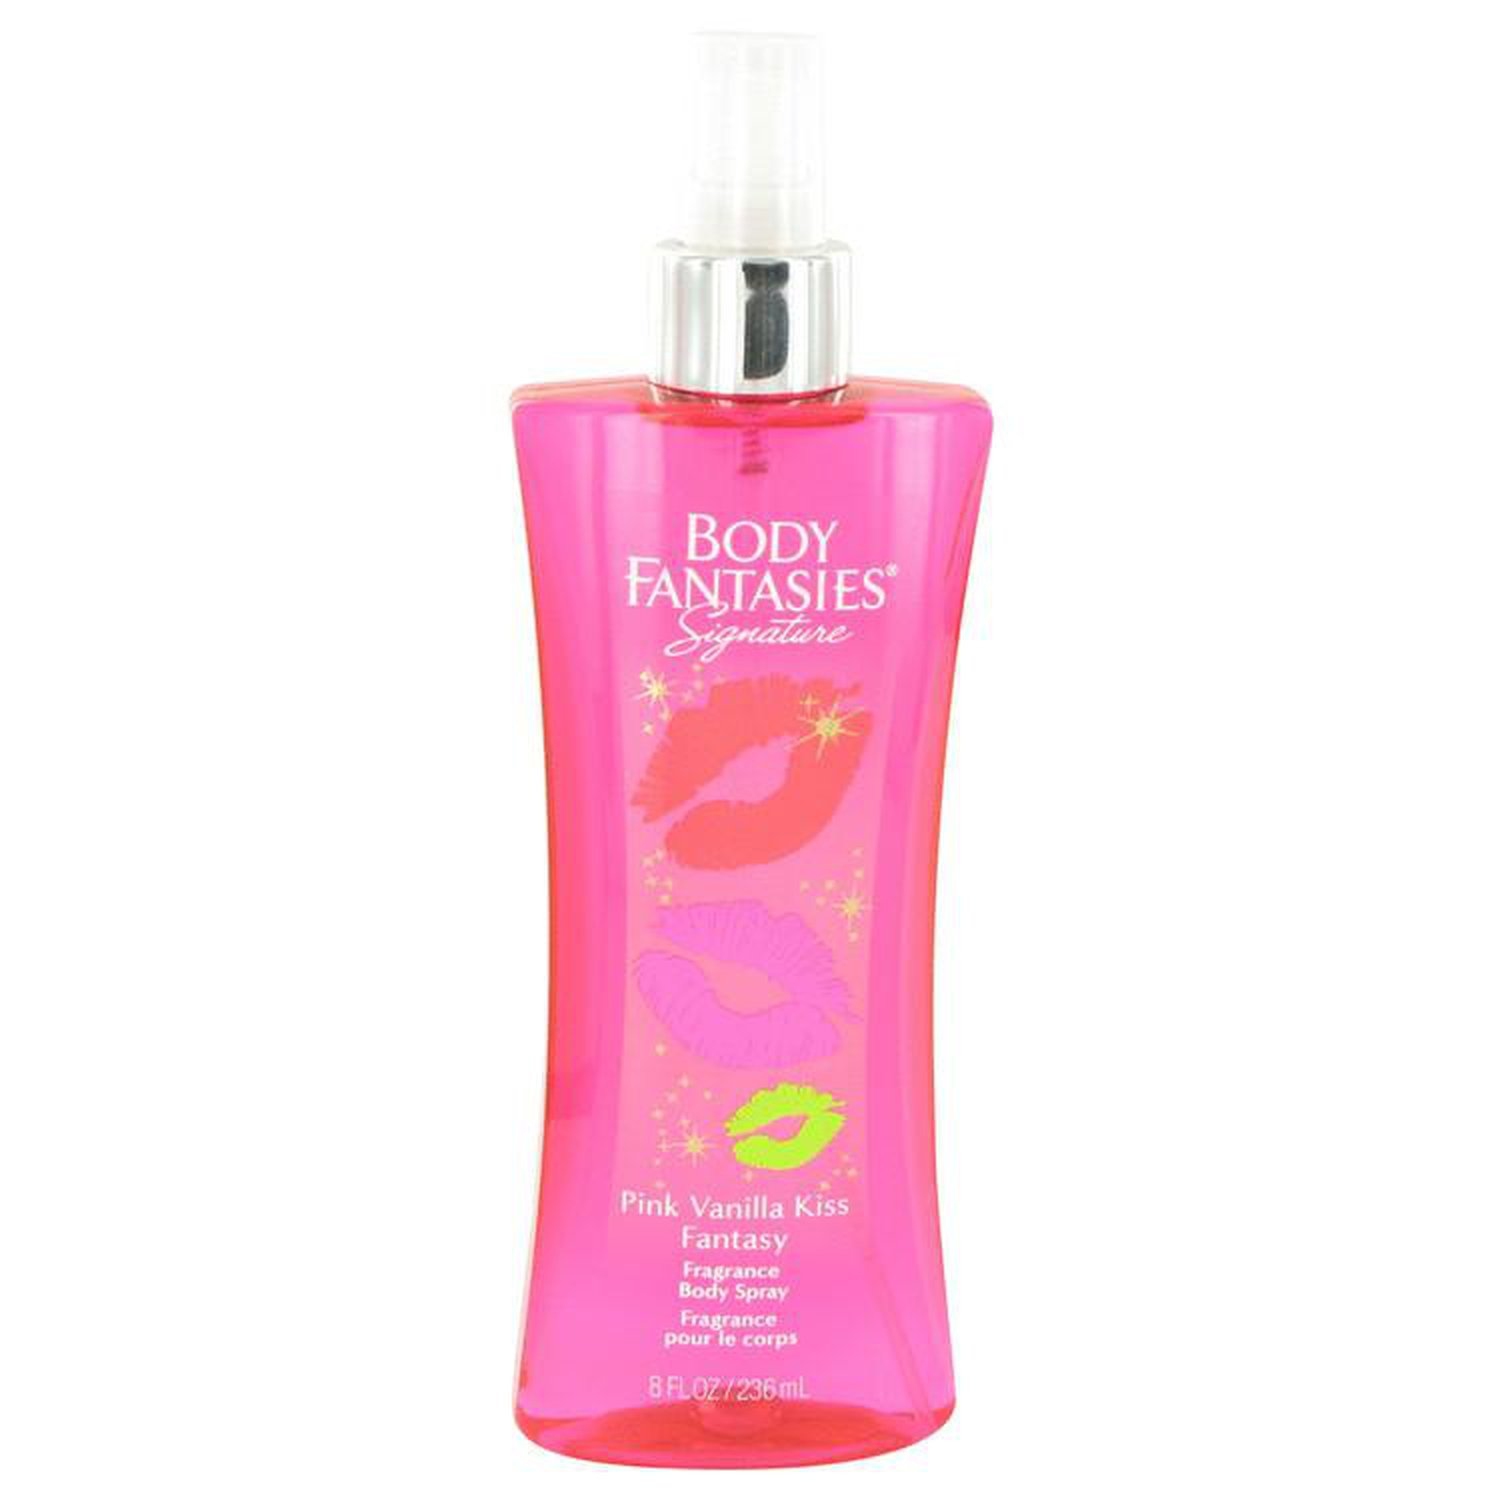 Body Fantasies Signature Pink Vanilla Kiss Fantasy by Parfums De Coeur Body Spray 8 oz